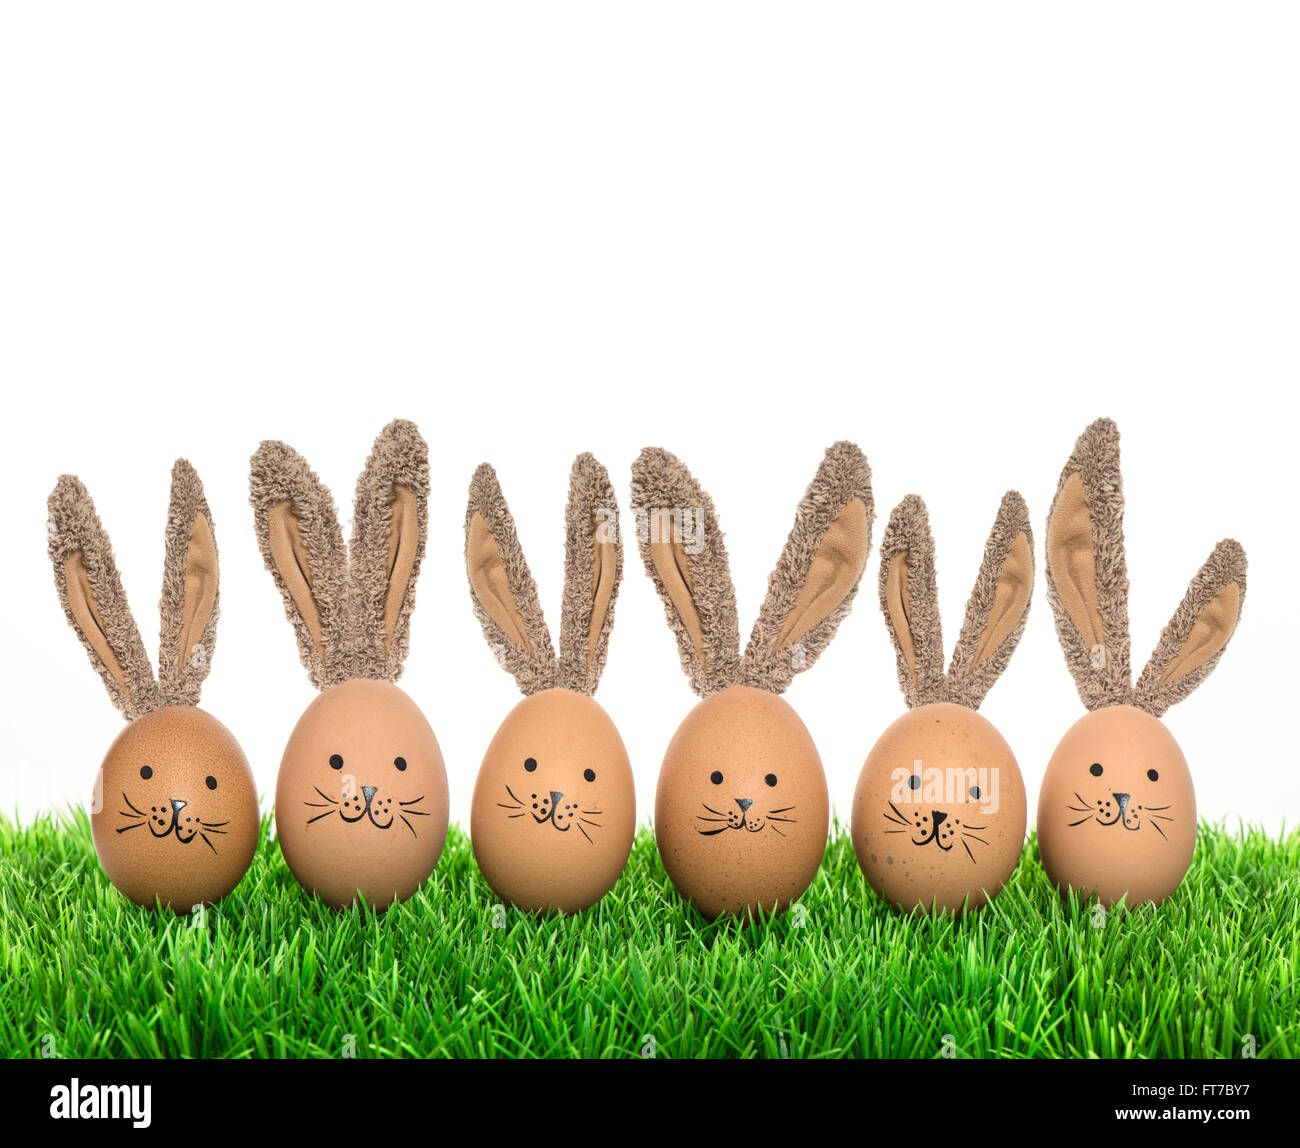 Carino sorridente coniglietti uova di pasqua con grandi orecchie. Vacanze divertenti decorazione Foto Stock